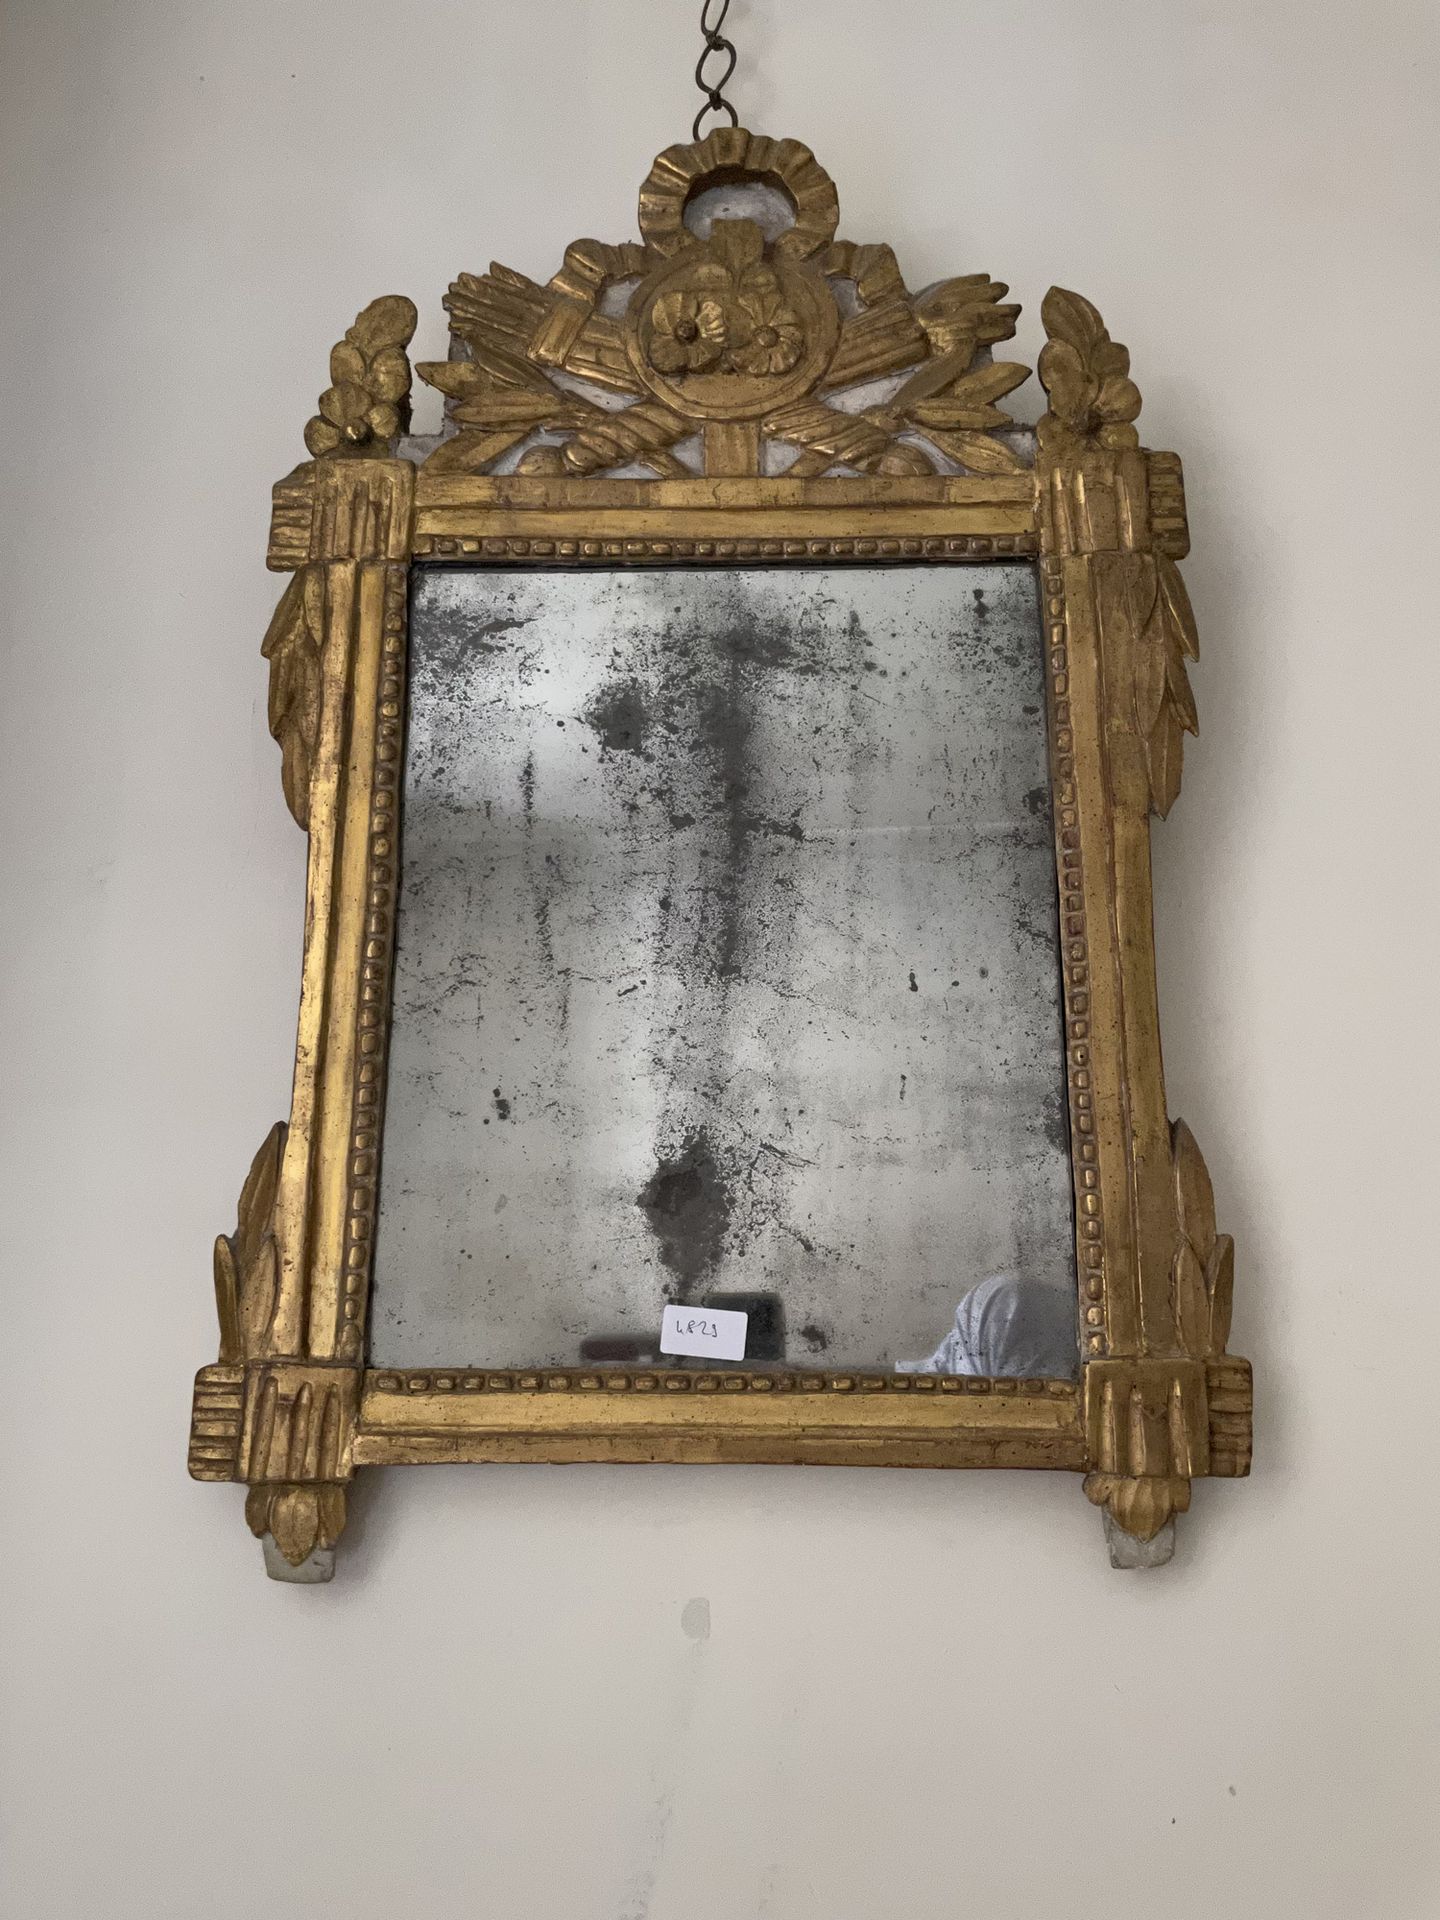 Null Miroir
En bois sculpté et doré
Epoque Louis XVI H. 75 cm - L. 47 cm